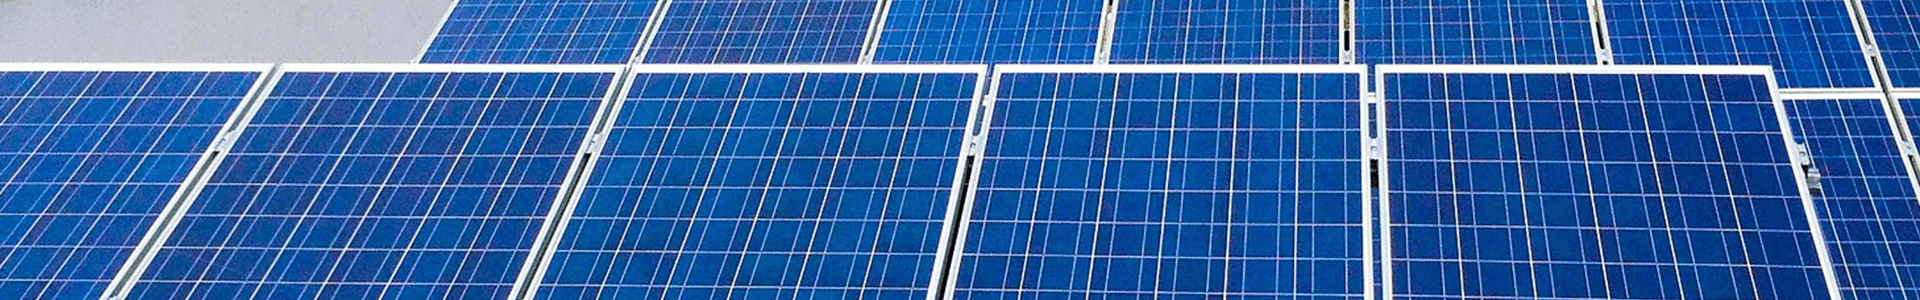 Impianti fotovoltaici di piccola potenza